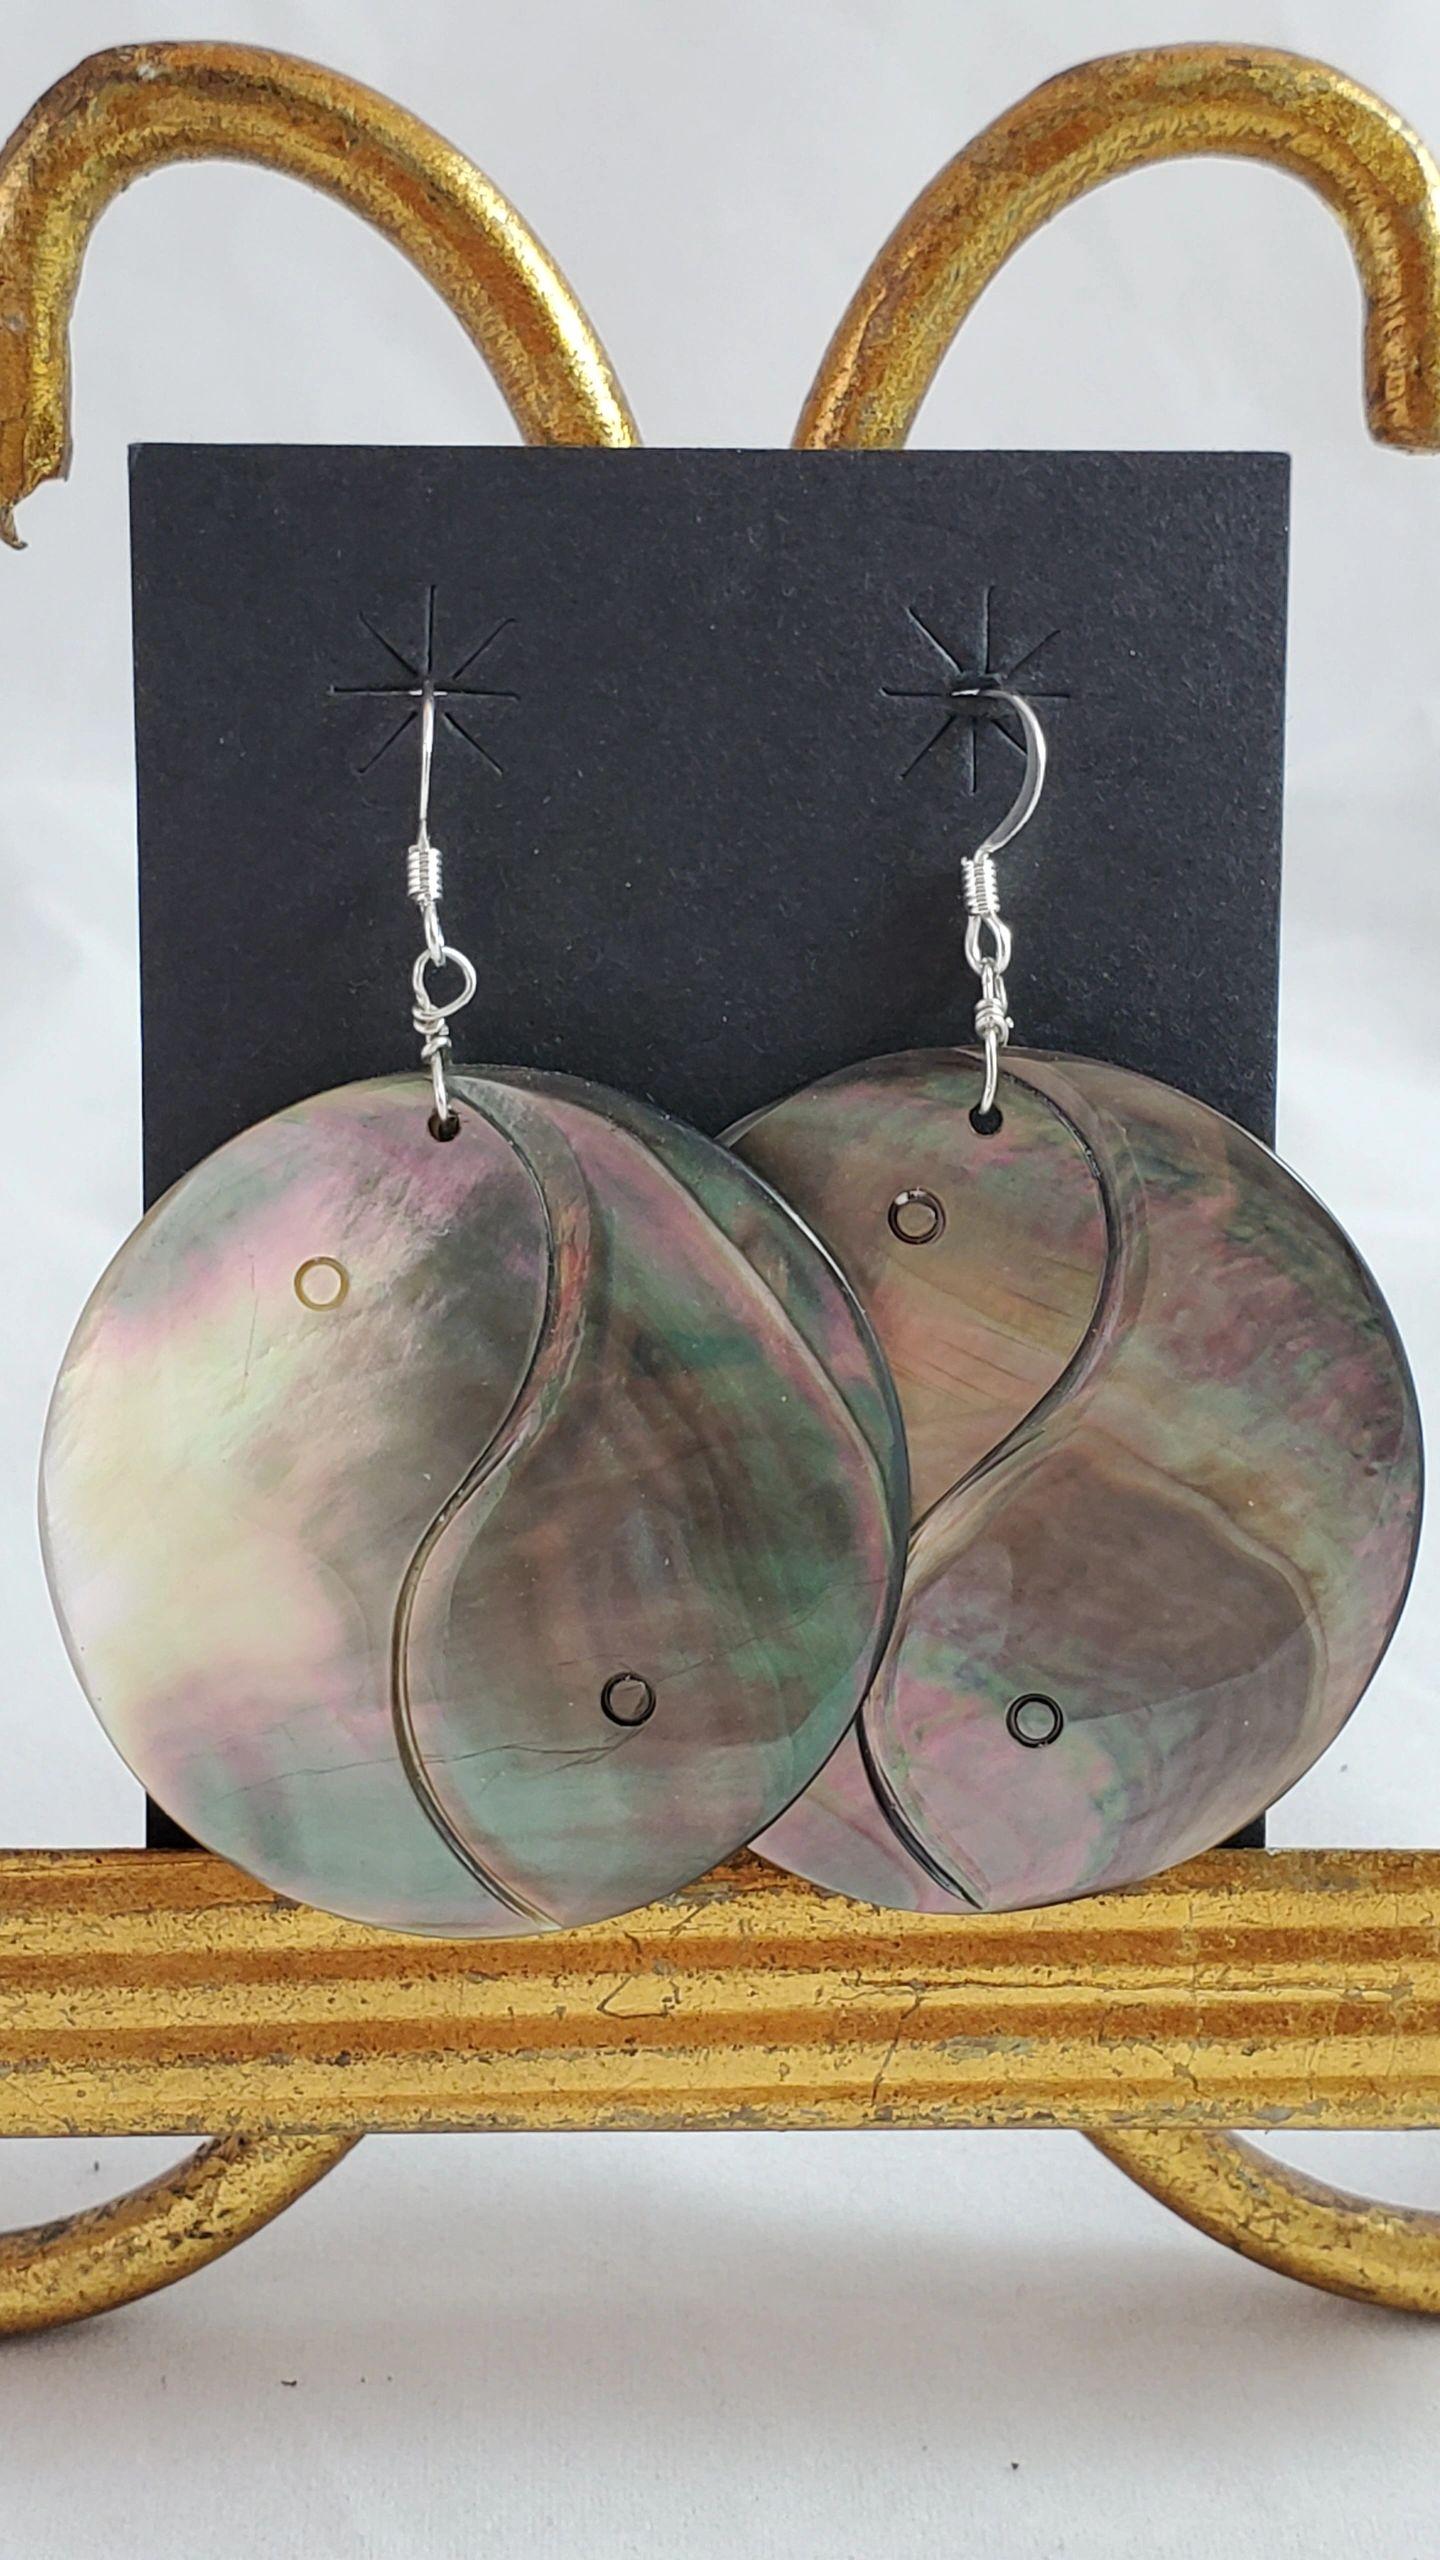 Yin-Yang Abalone Shell earrings - Albuquerque Pawn Shop